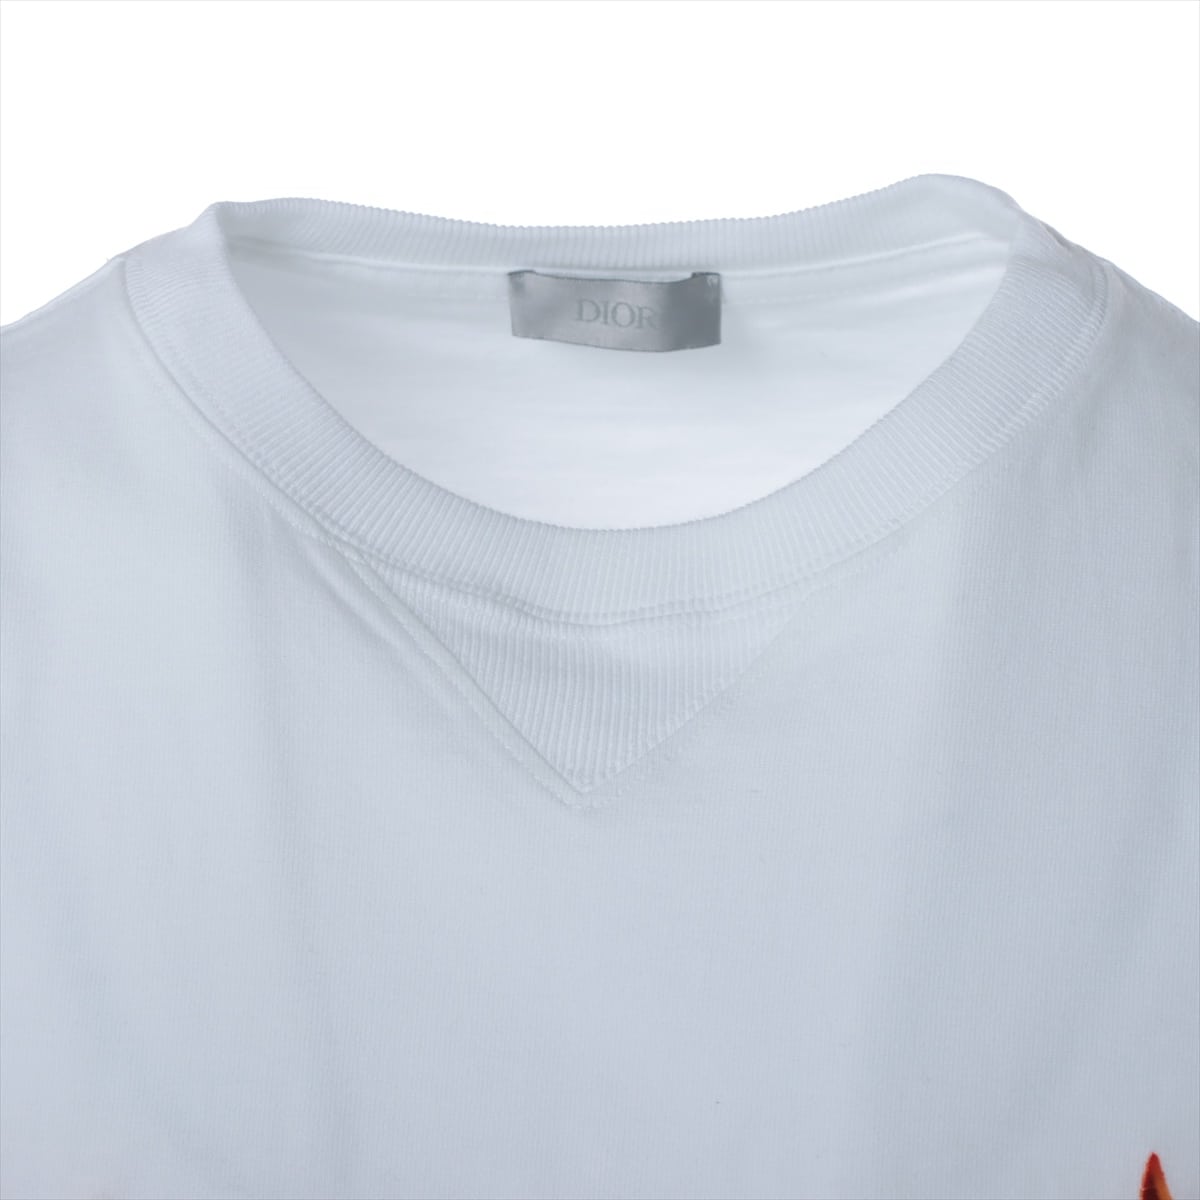 DIOR ディオール 22SS COMPACT COTTON TEE S/S 293J659A0554 フットボールロゴ刺繍オーバーサイズ半袖Tシャツ カットソーホワイト